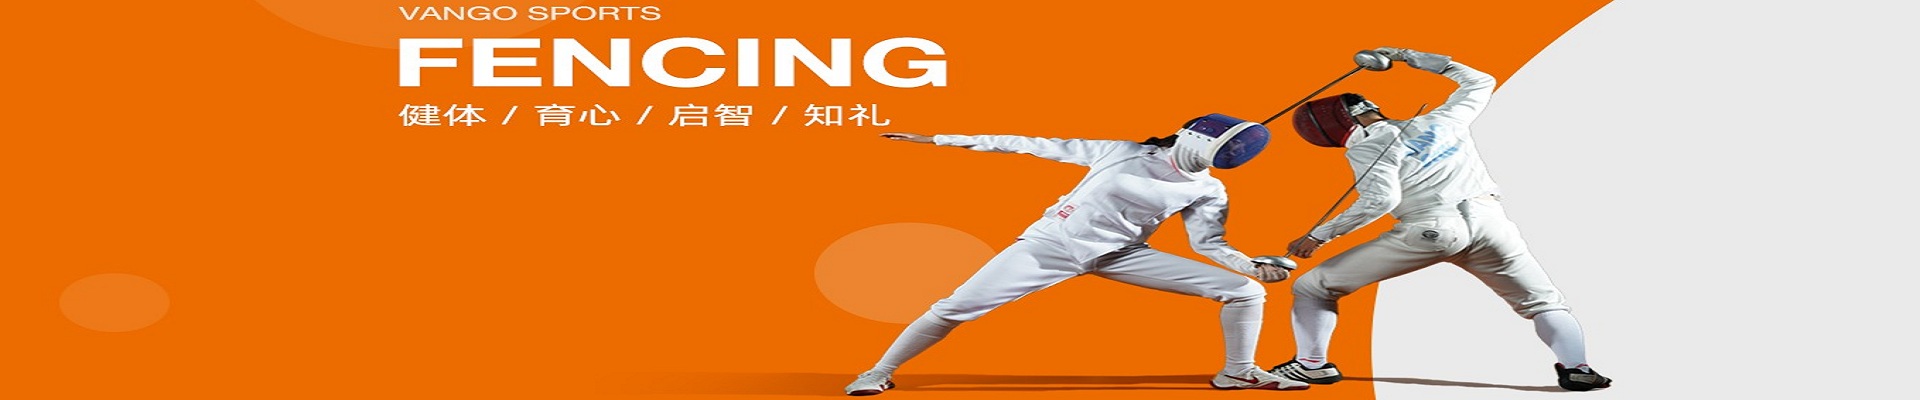 广州万国体育国际击剑中心